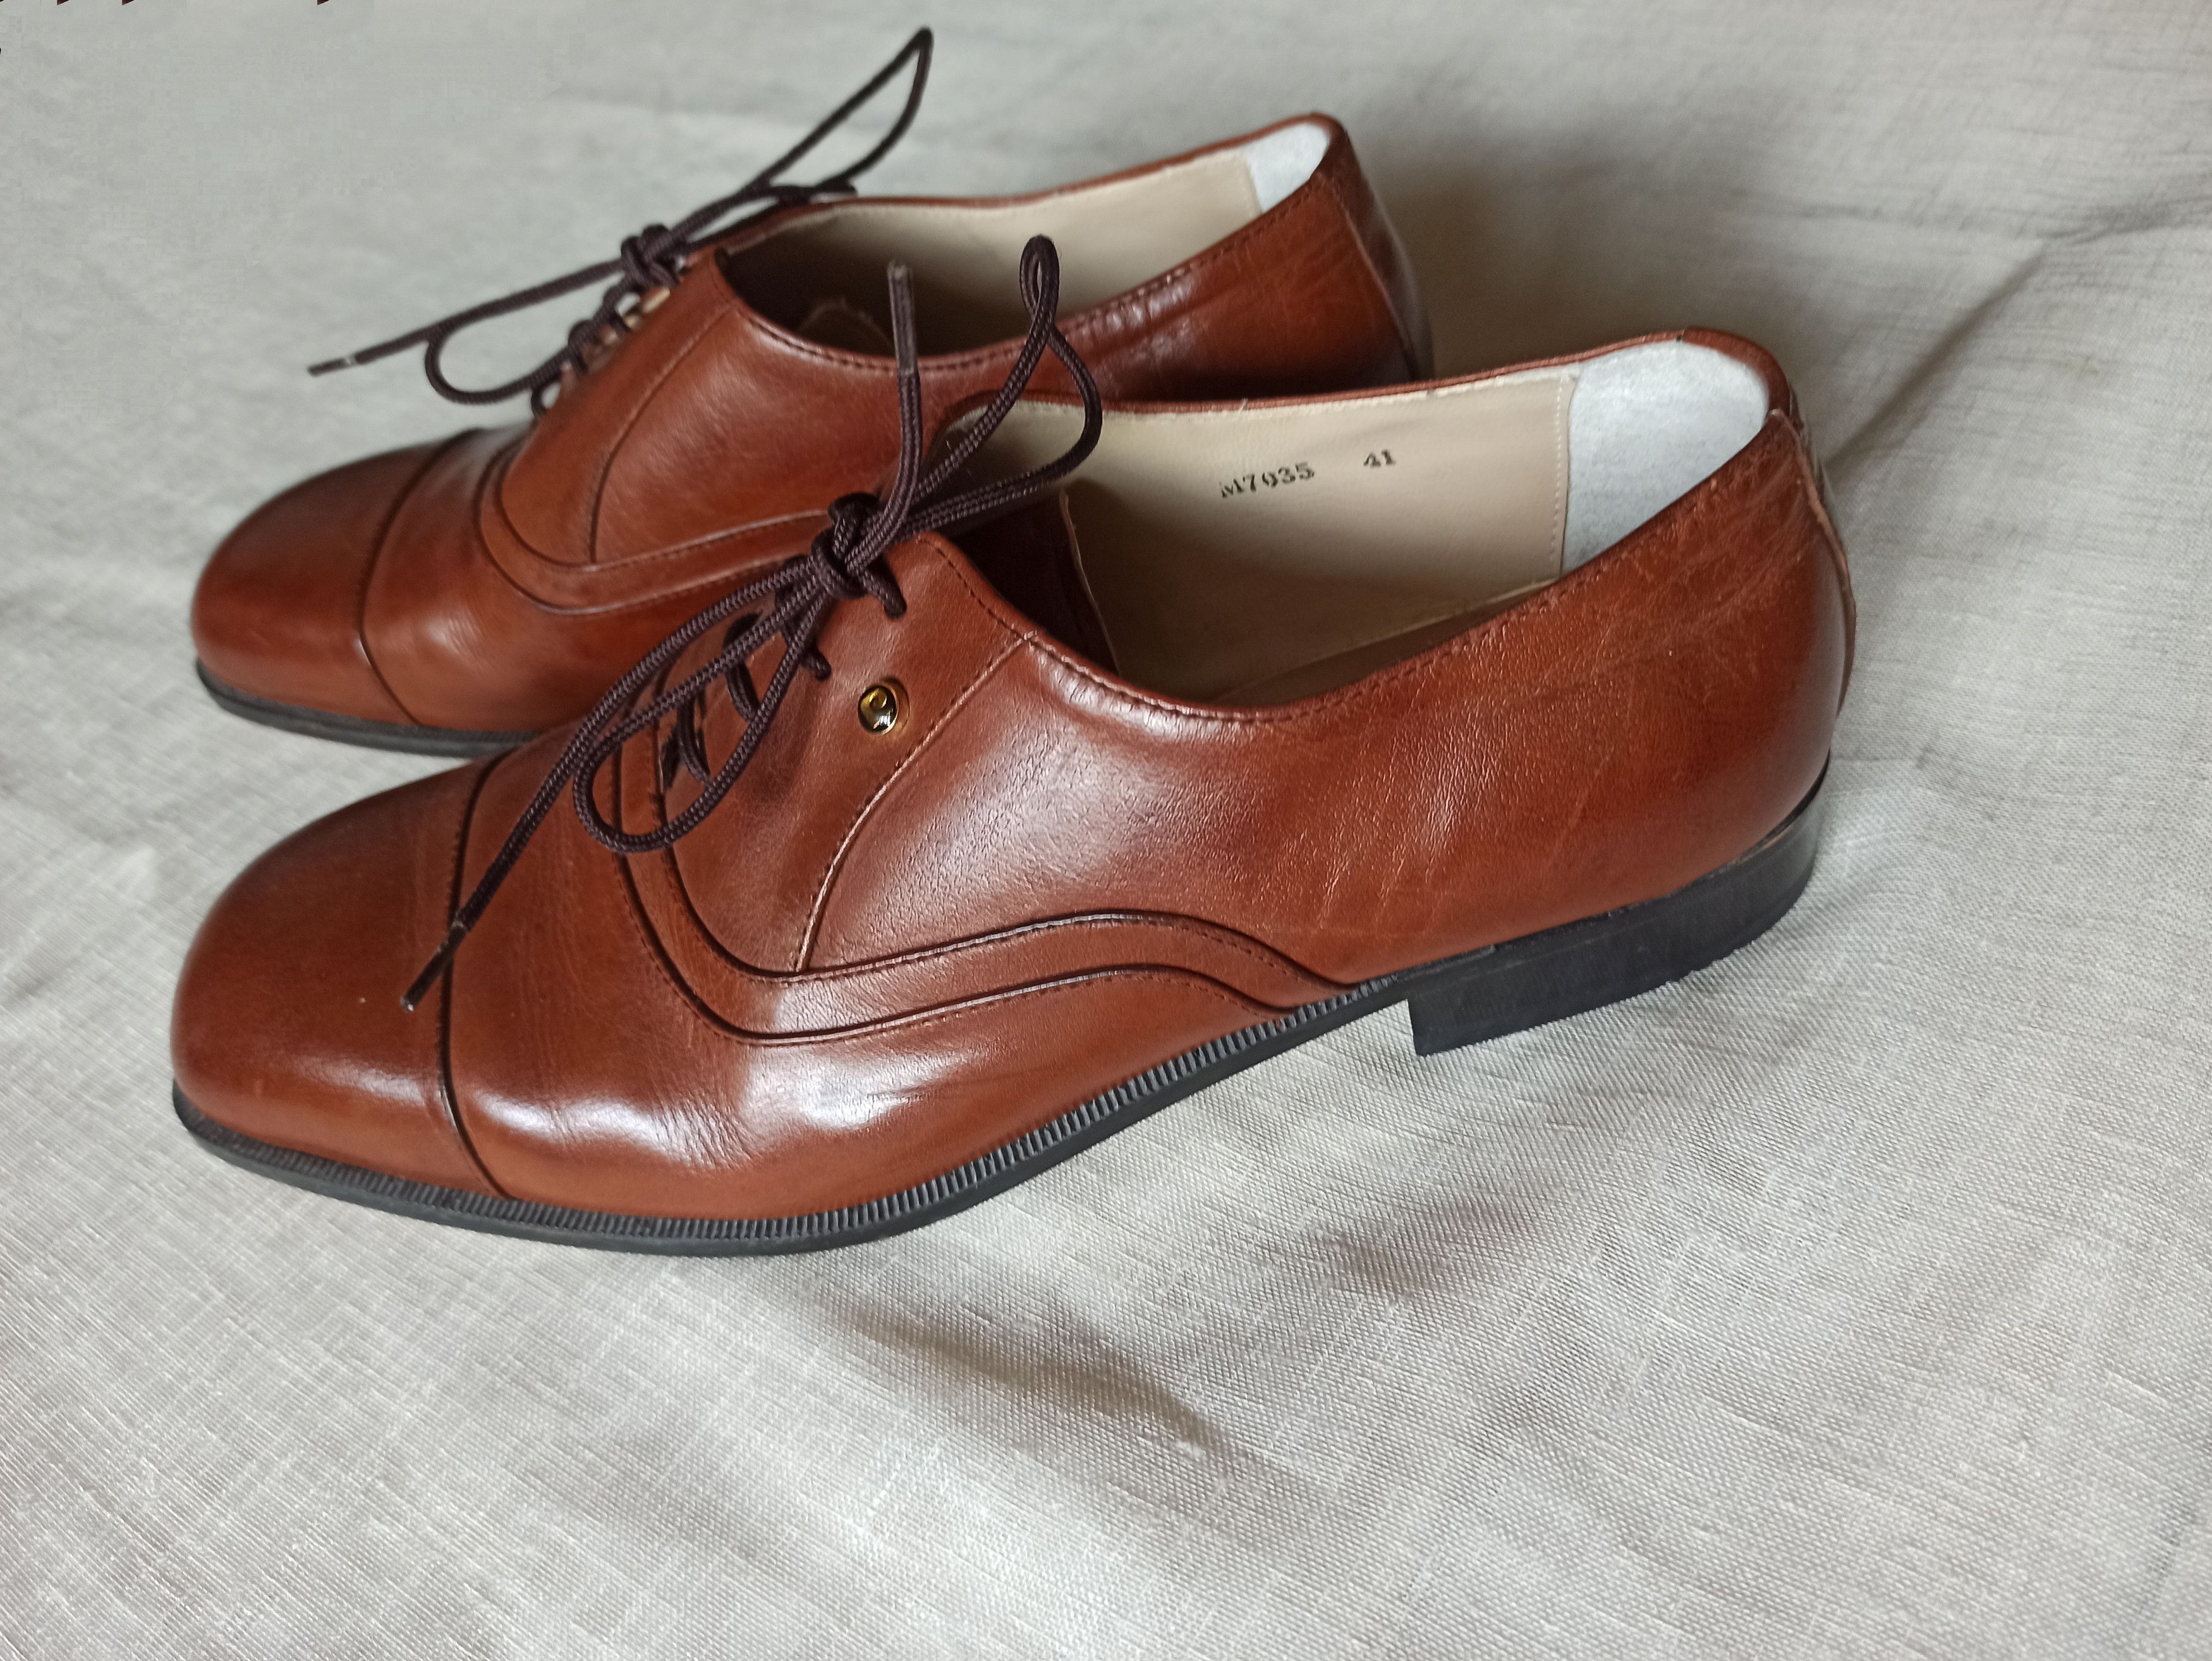 Pierre Cardin Vintage Pierre Cardin shoes Size US 8 / EU 41 - 5 Preview